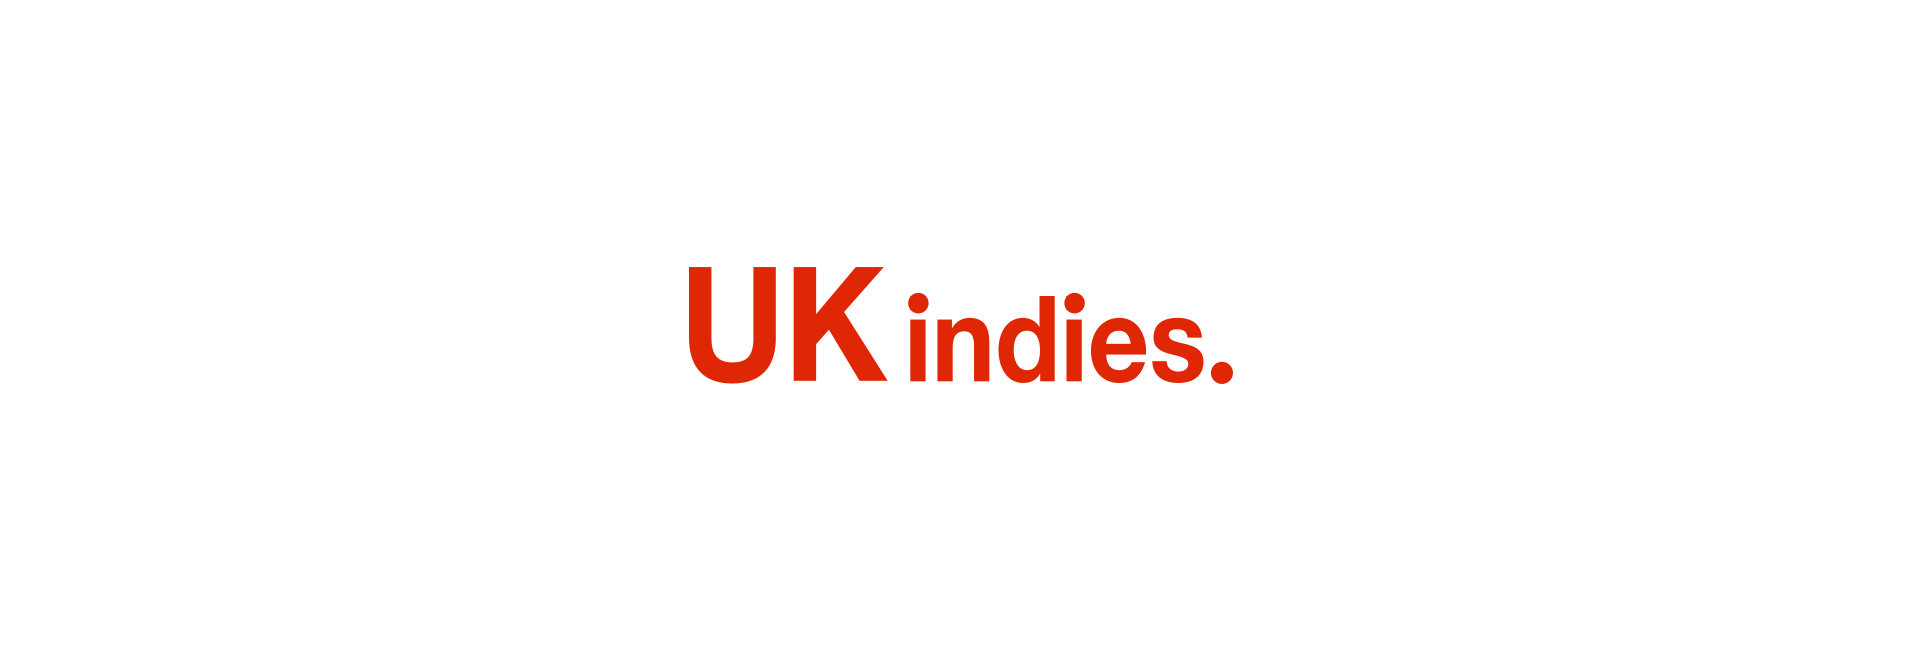 UK Indies Placeholder Logo